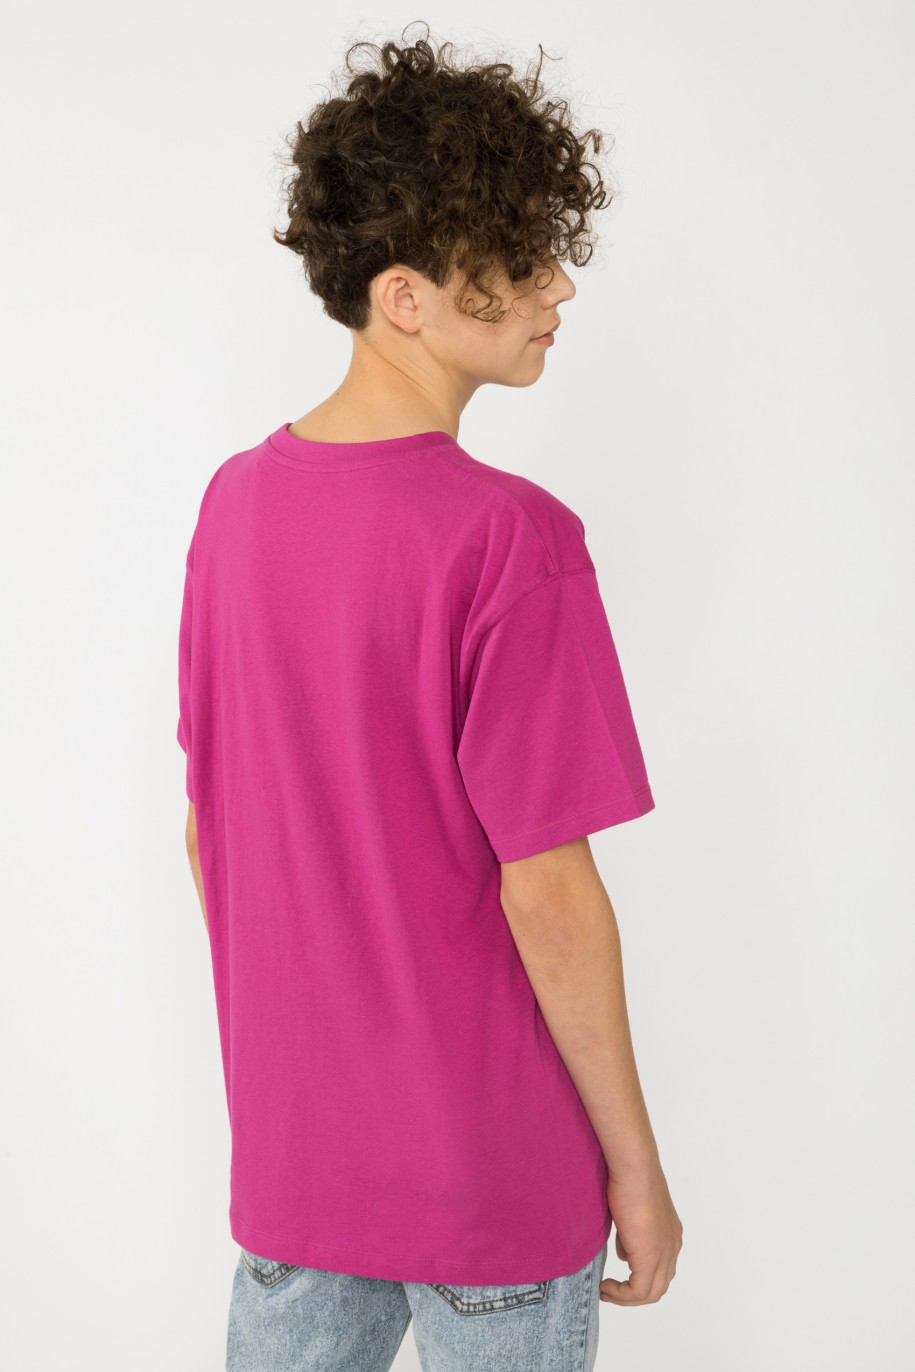 Fioletowy t-shirt z nadrukiem SKULL dla chłopaka - 33525